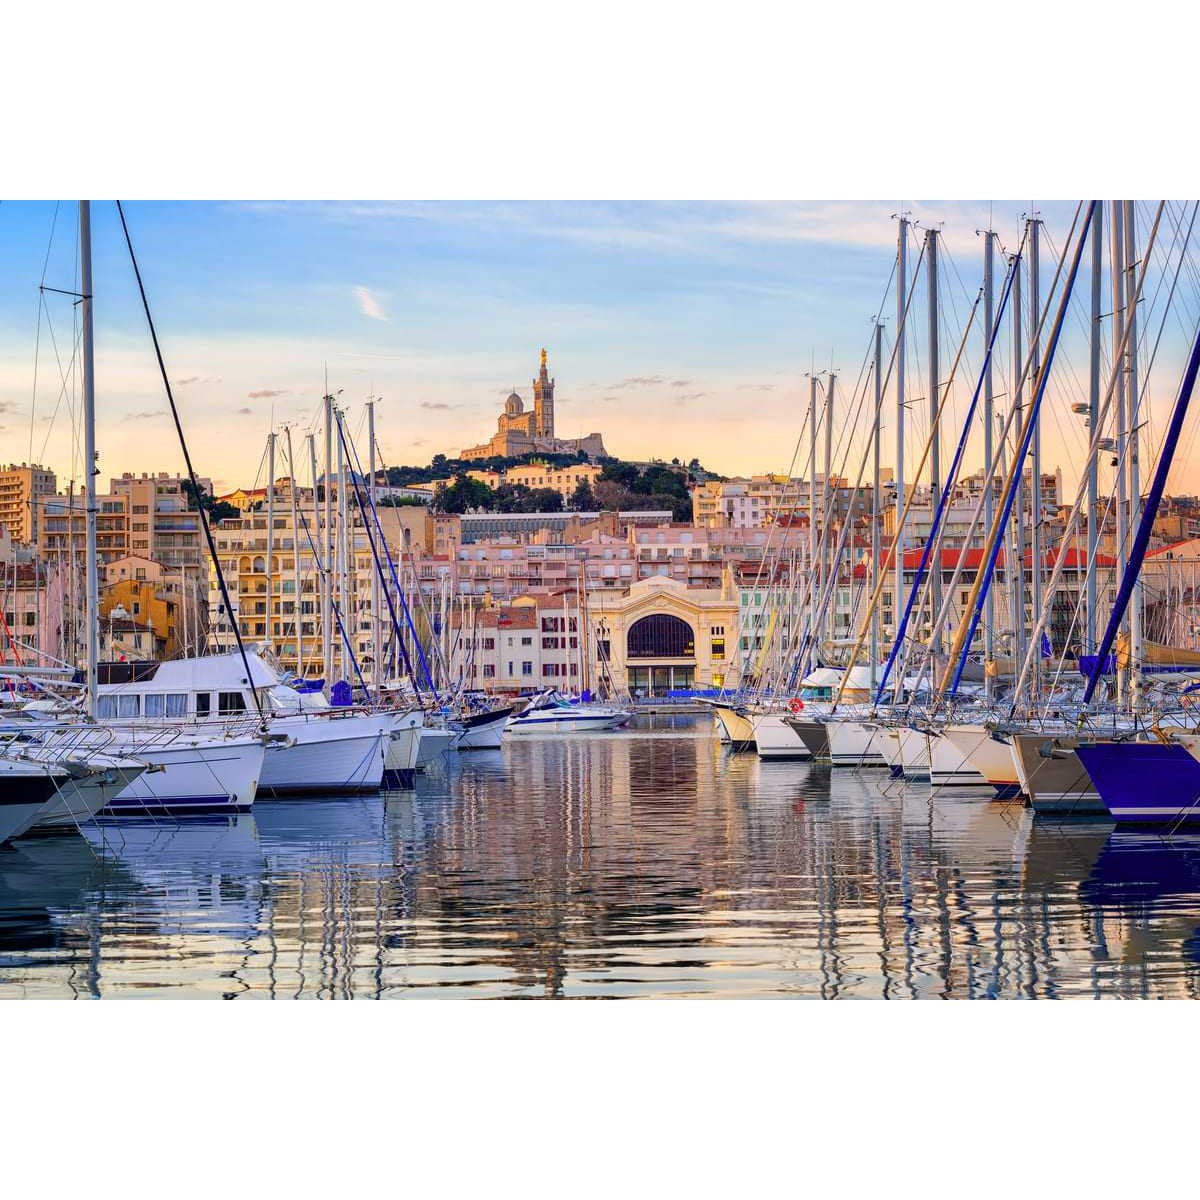 Tableau sur toile bateaux vieux port Marseille